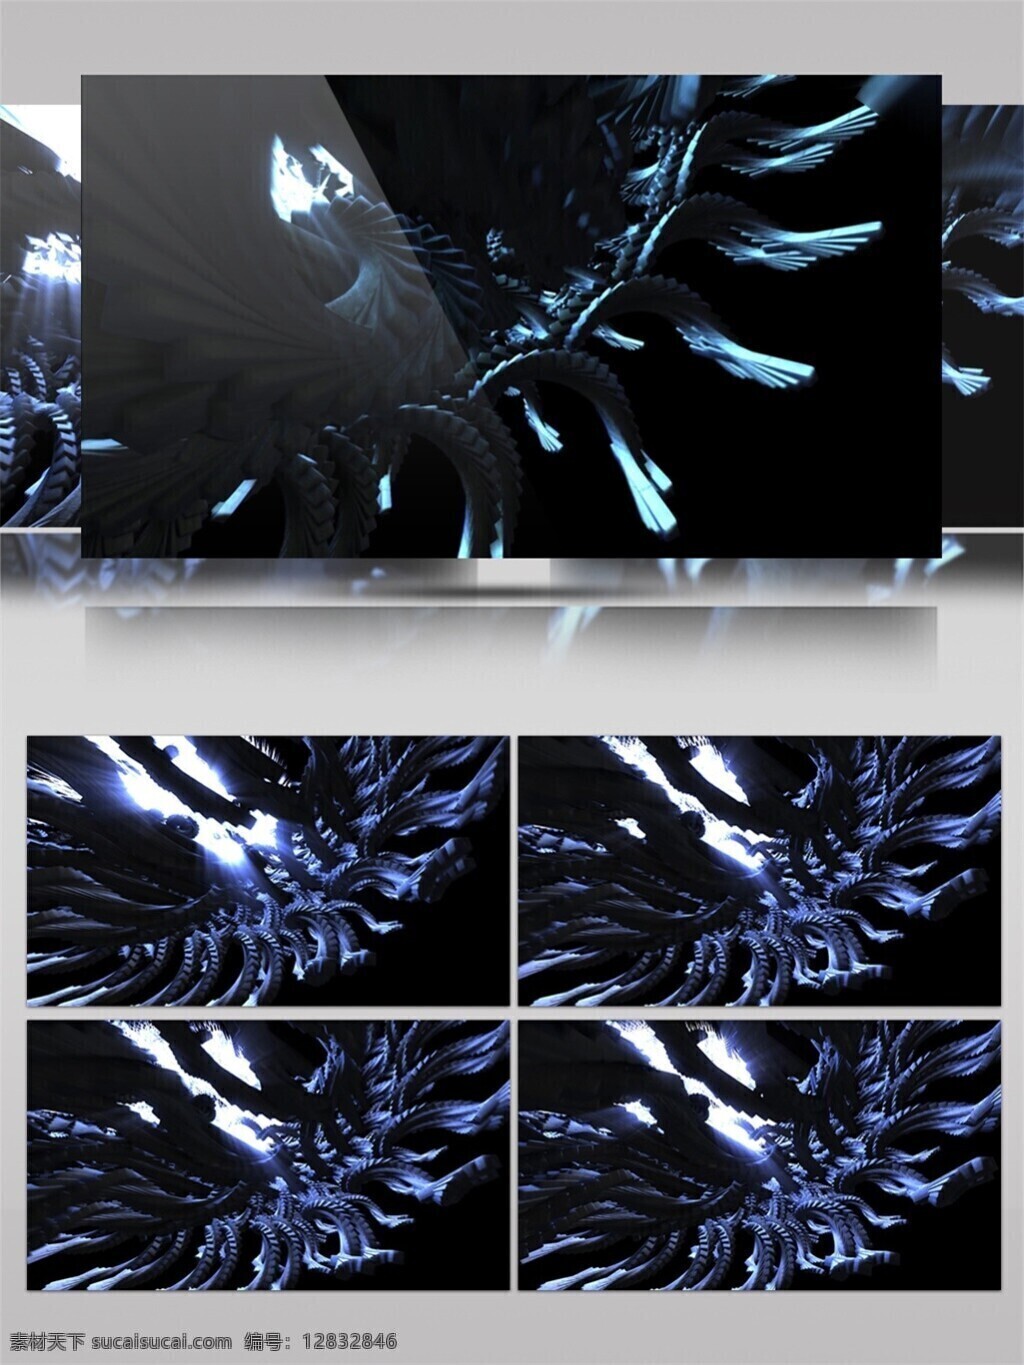 蓝色 梦幻 光斑 动态 视频 激光 冰冷 宇宙 唯美背景素材 视觉享受 节目灯光